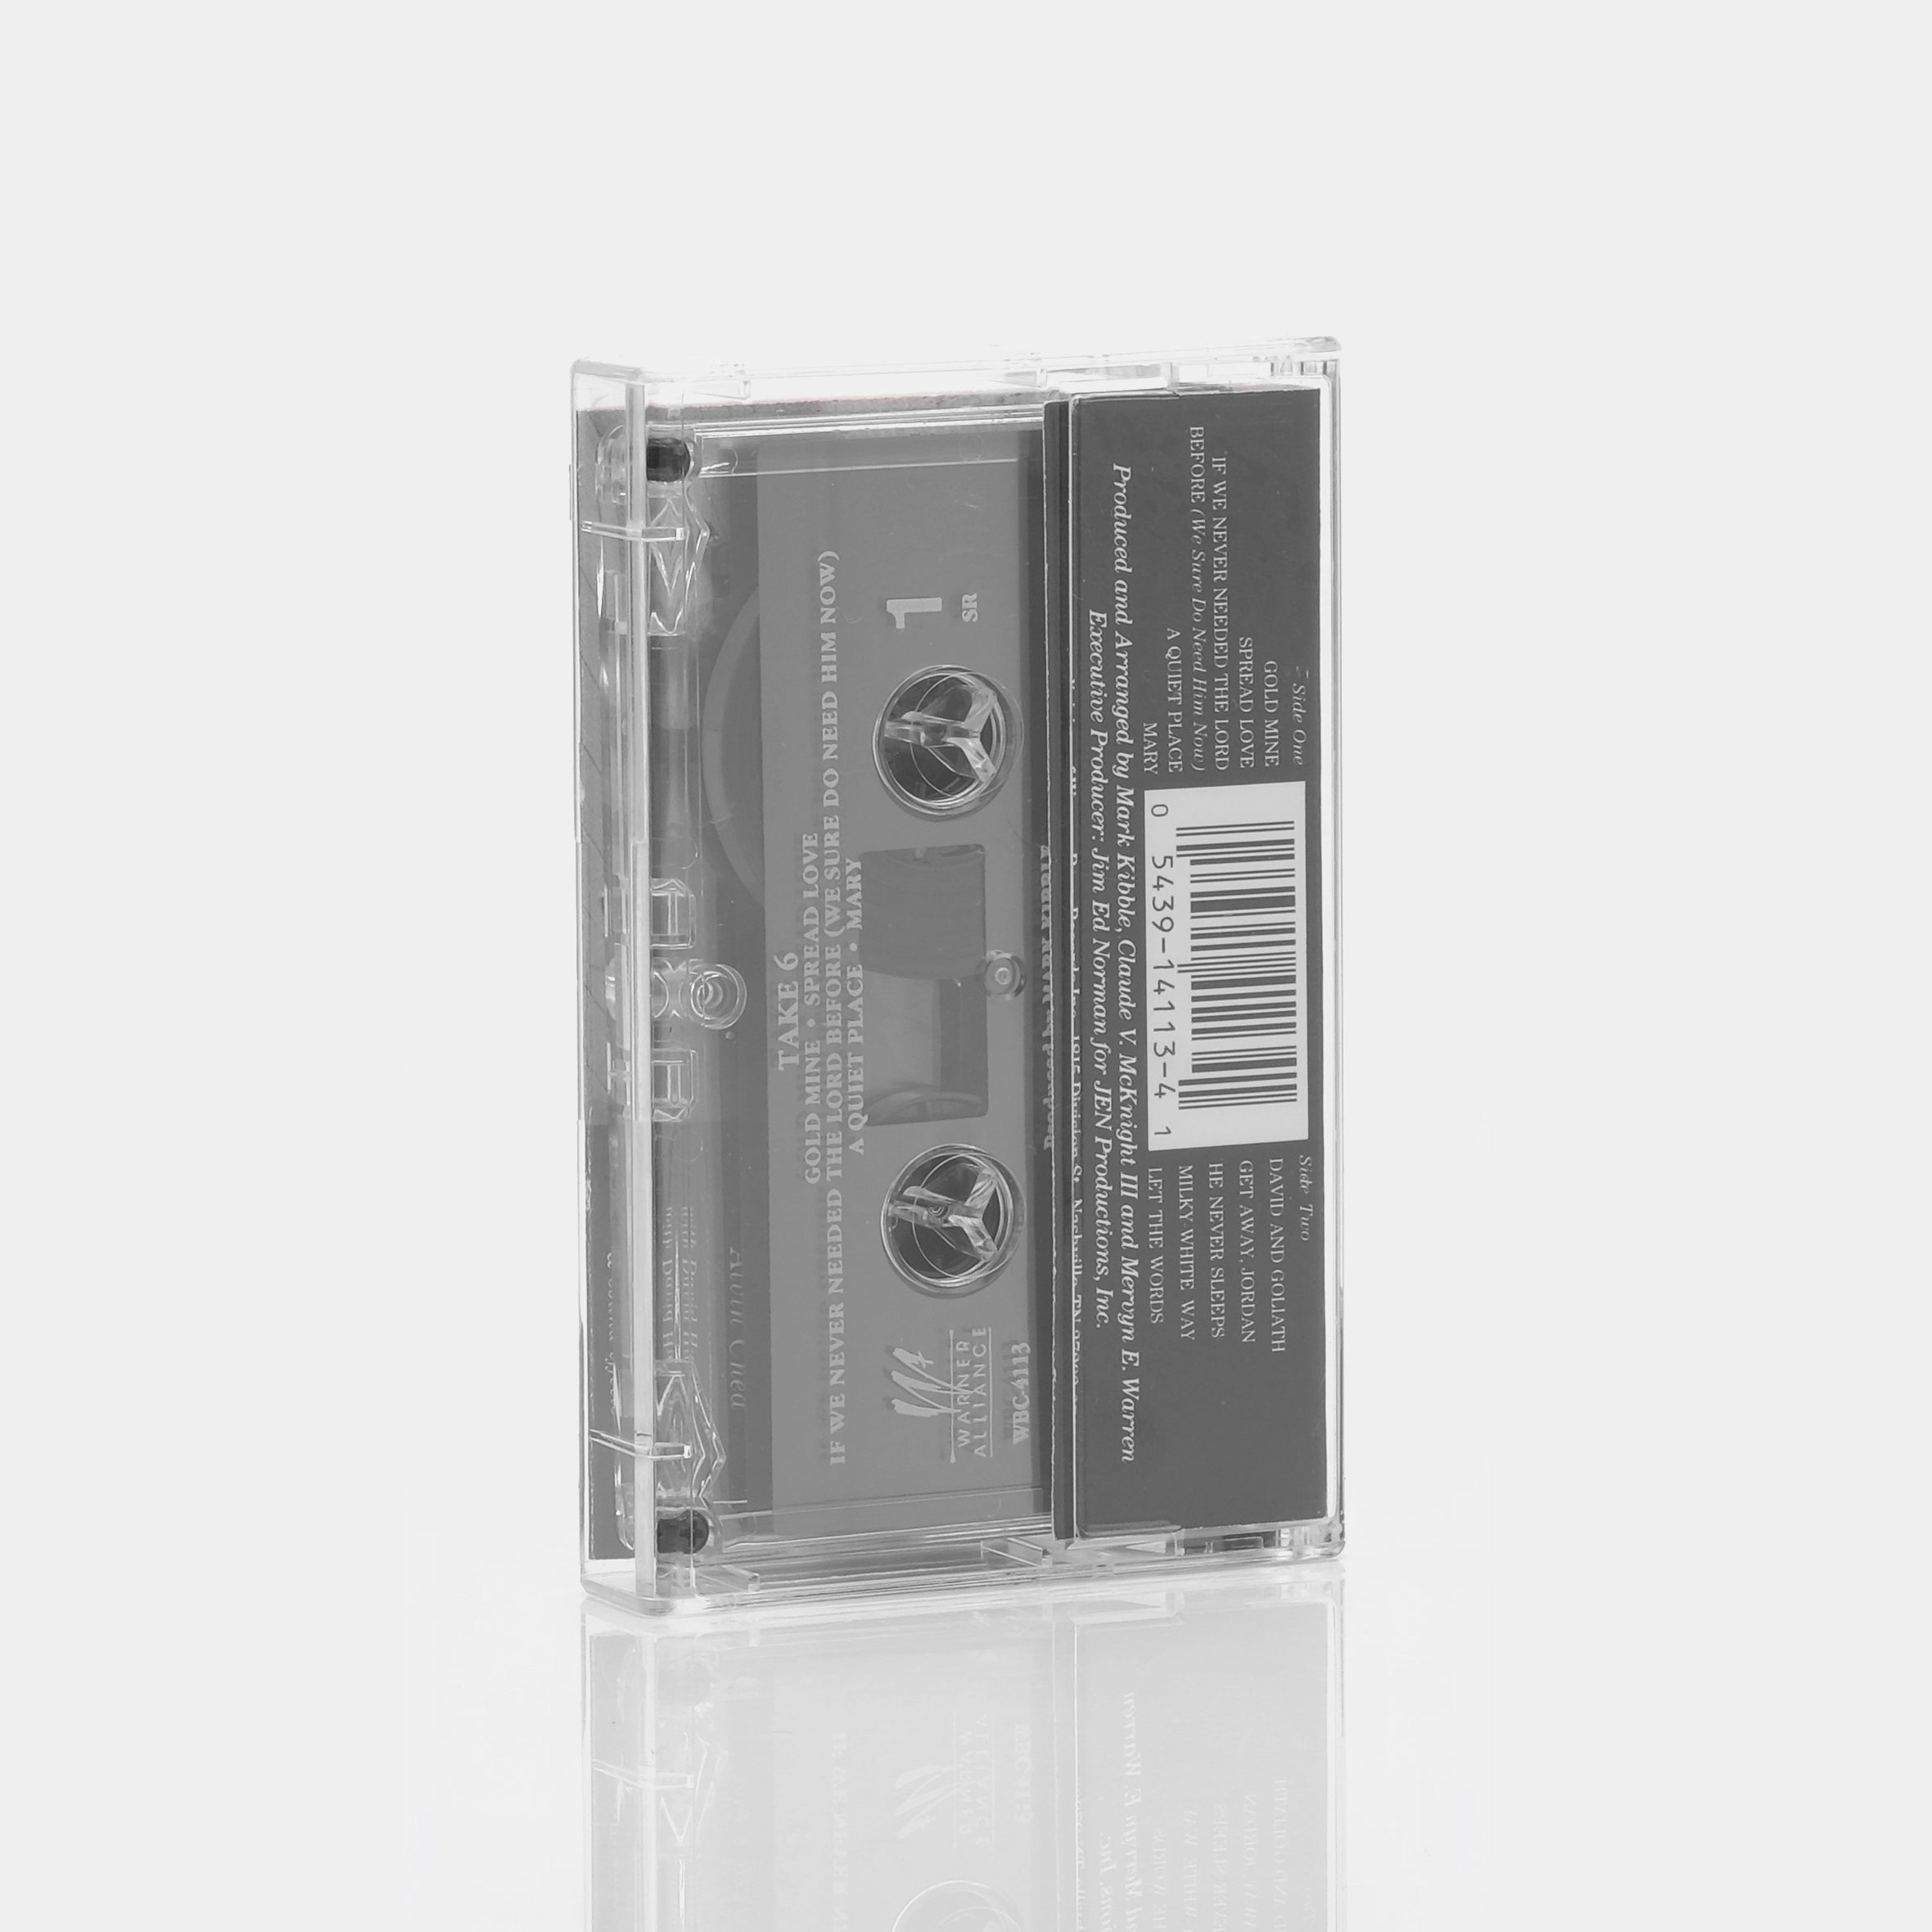 Take 6 - Take 6 Cassette Tape